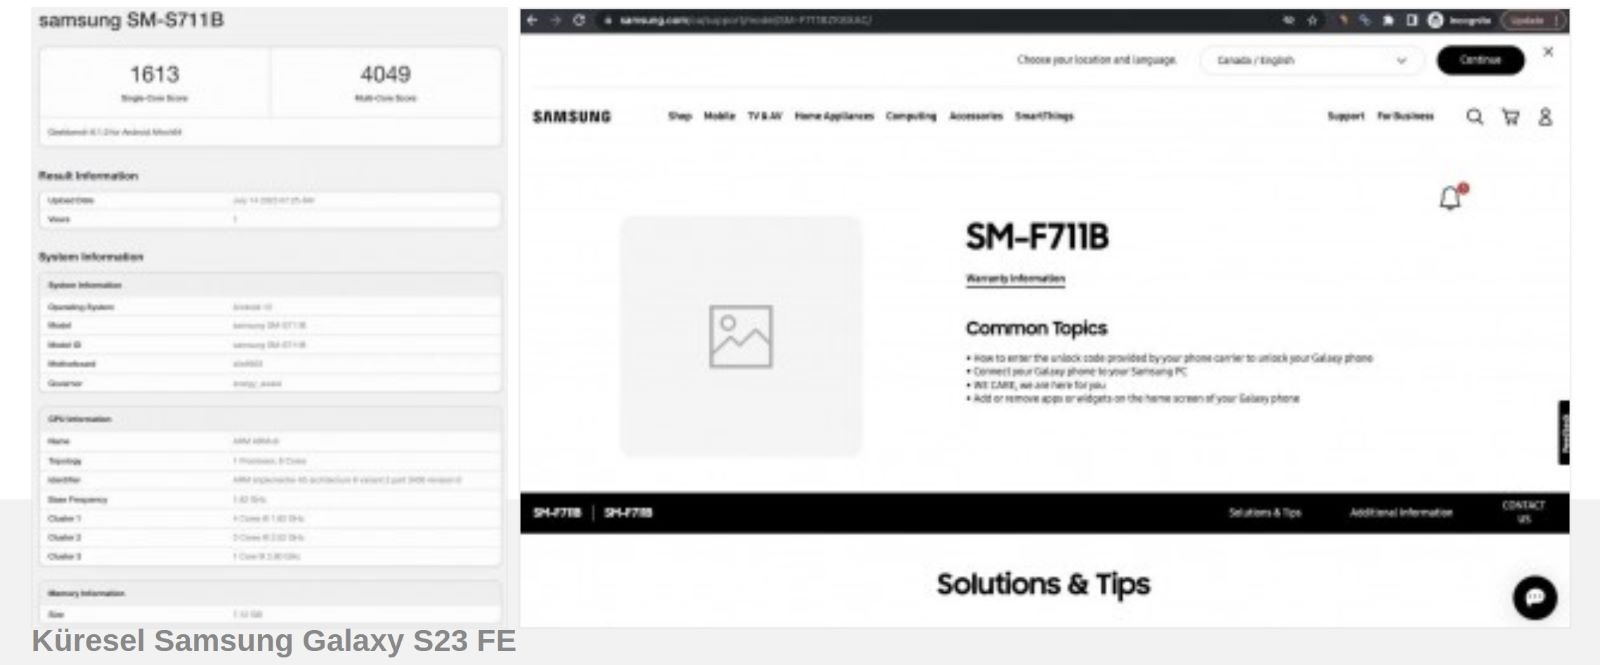 Samsung Galaxy S23 FE, iki farklı işlemci ile piyasaya sürülecek